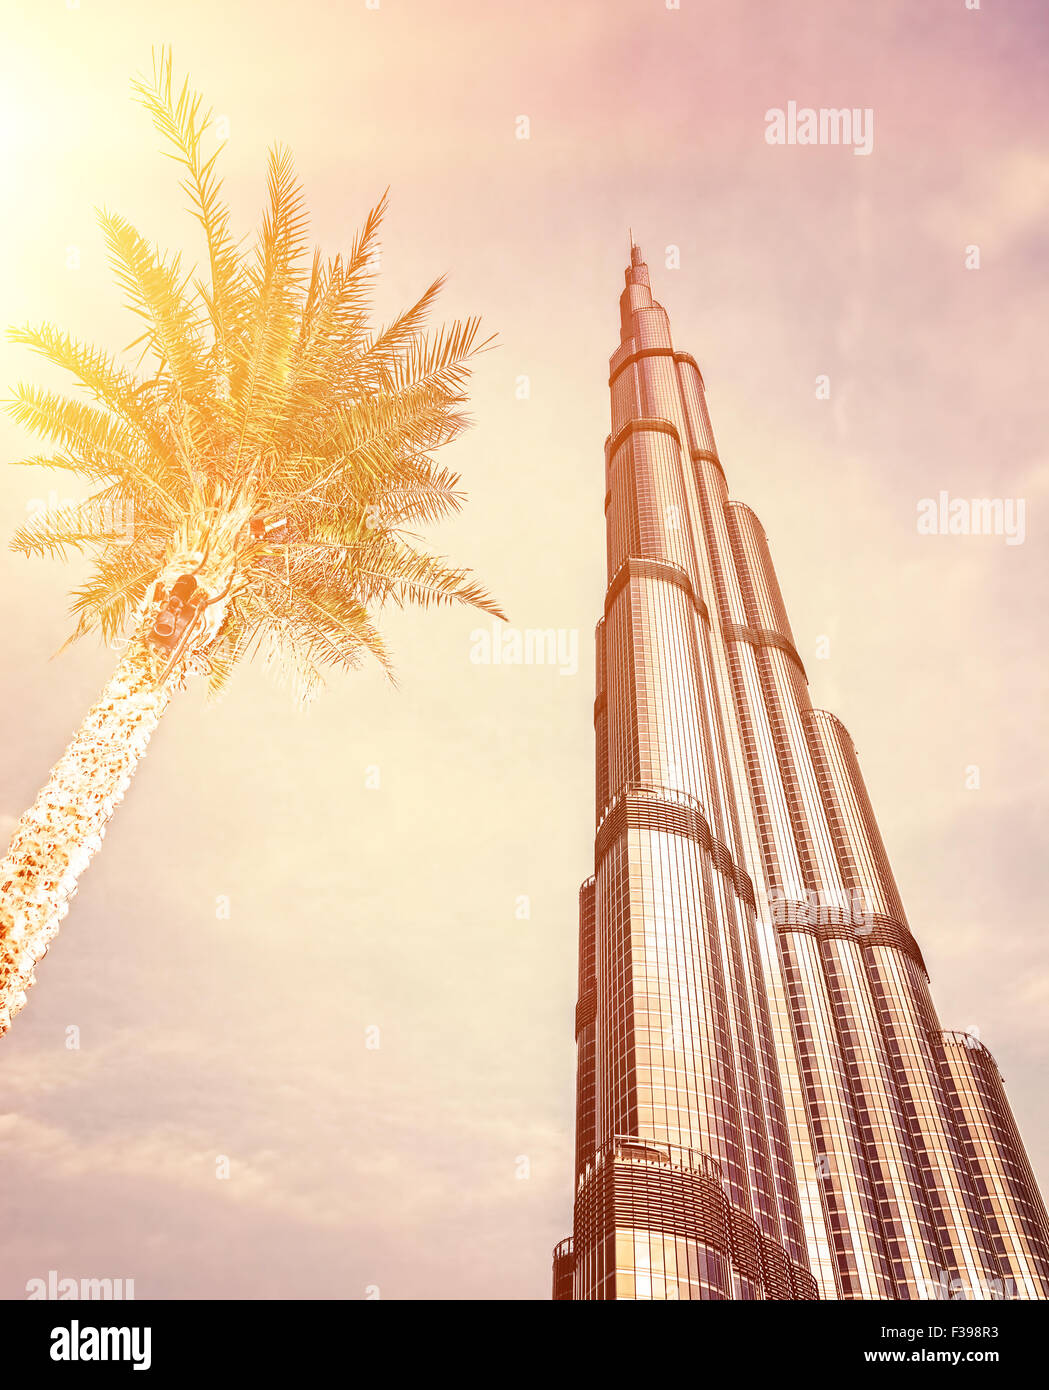 DUBAI, Emirati Arabi Uniti - 16 febbraio: Burj Khalifa - più alte del mondo torre al mondo a 828m, che si trova nel centro cittadino di Dubai Foto Stock